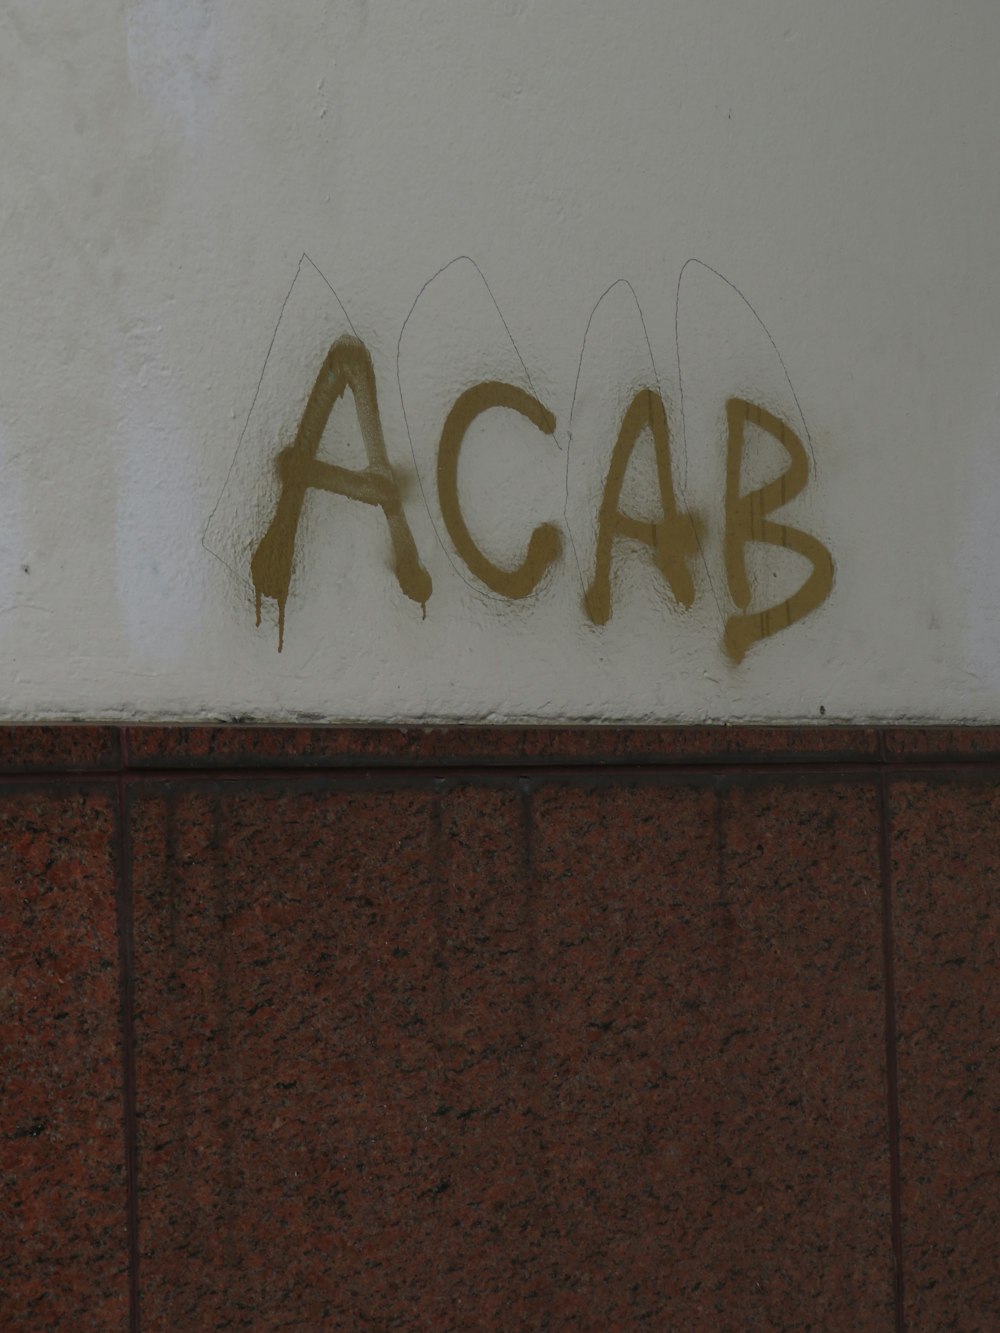 grafite na lateral de um edifício lê acab